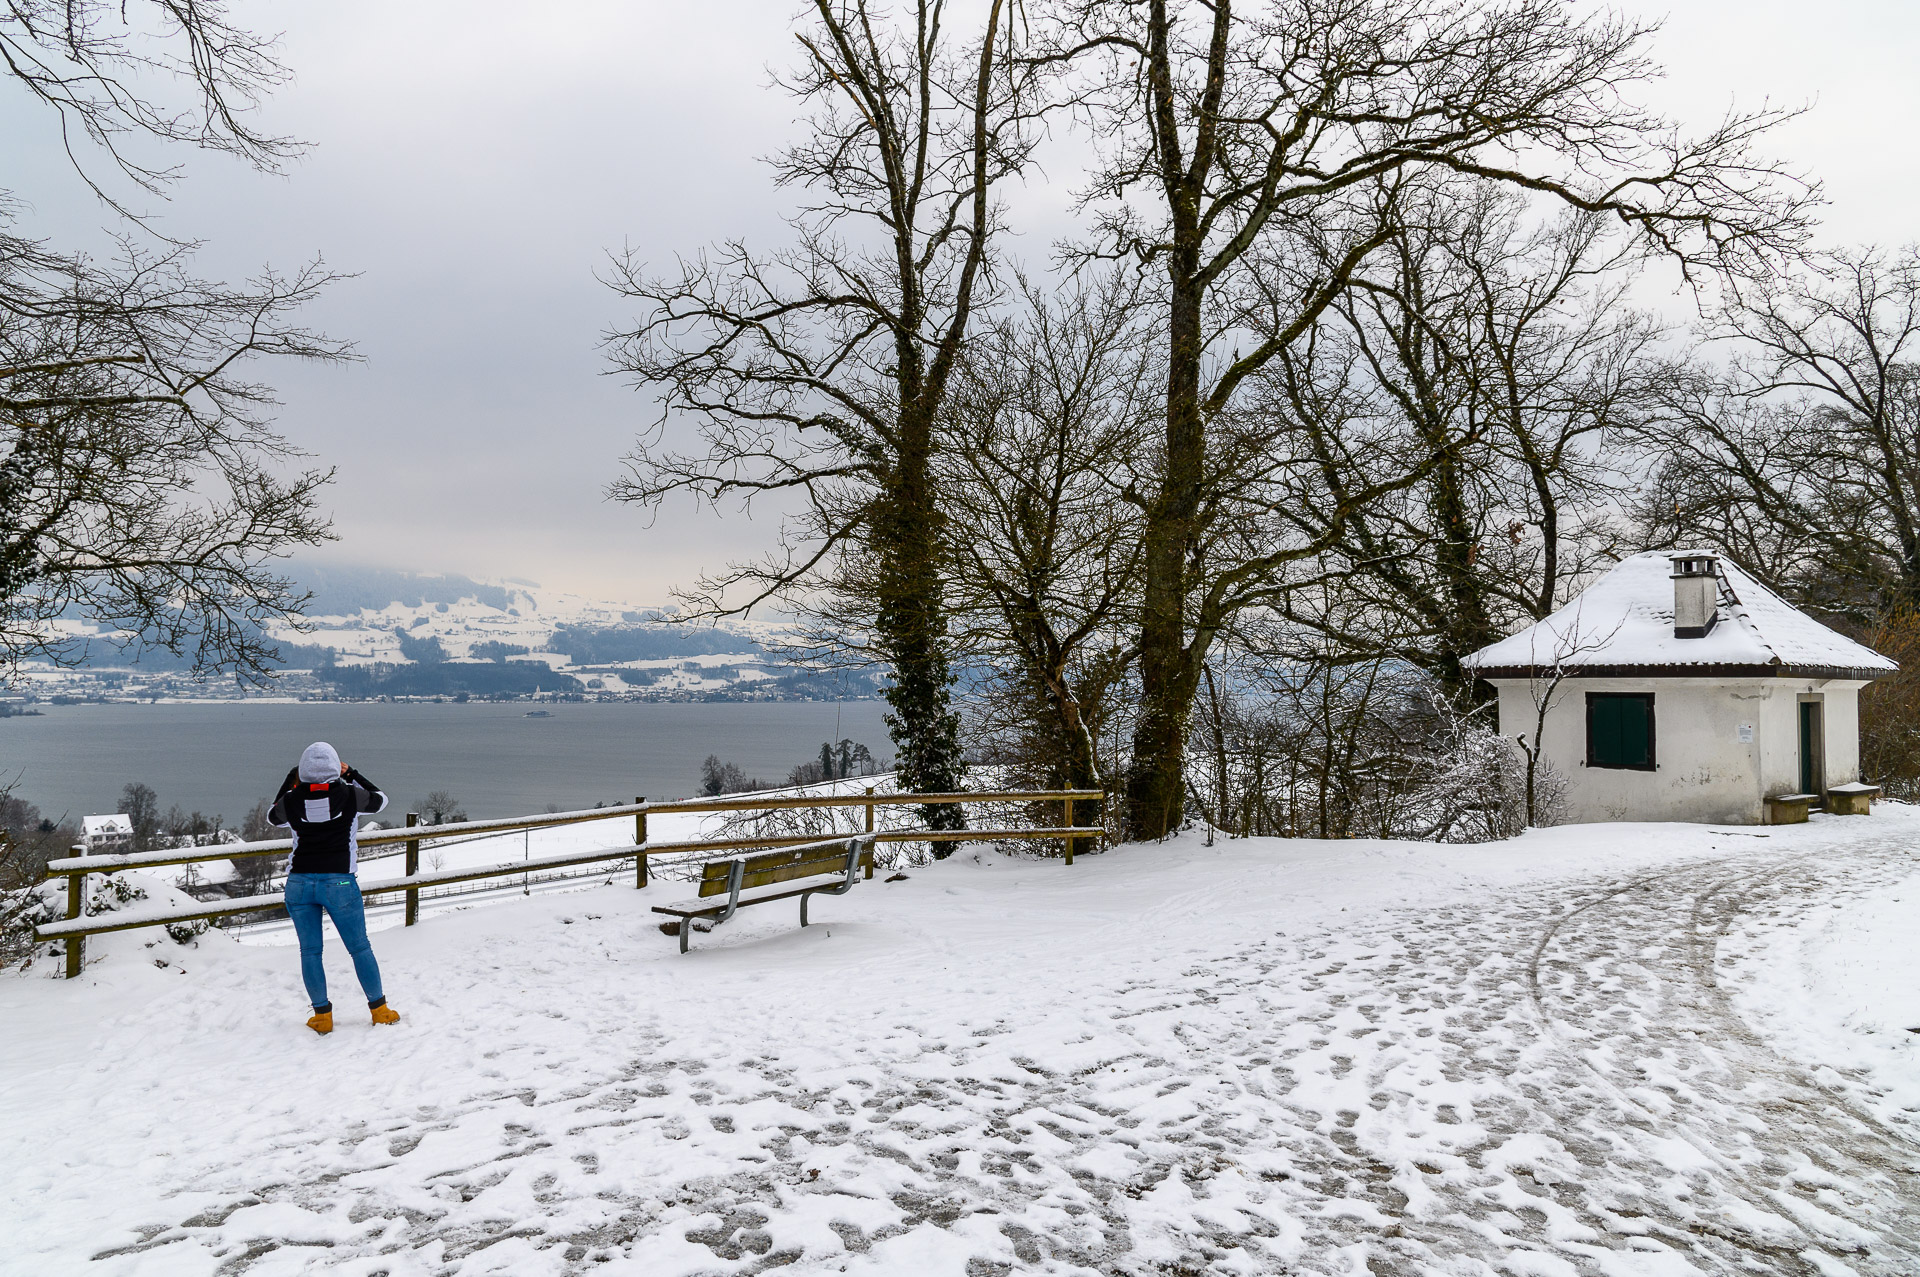 Am Aussichtspunkt in der Langgass mit Blick auf Zürichsee und Panta Rhei